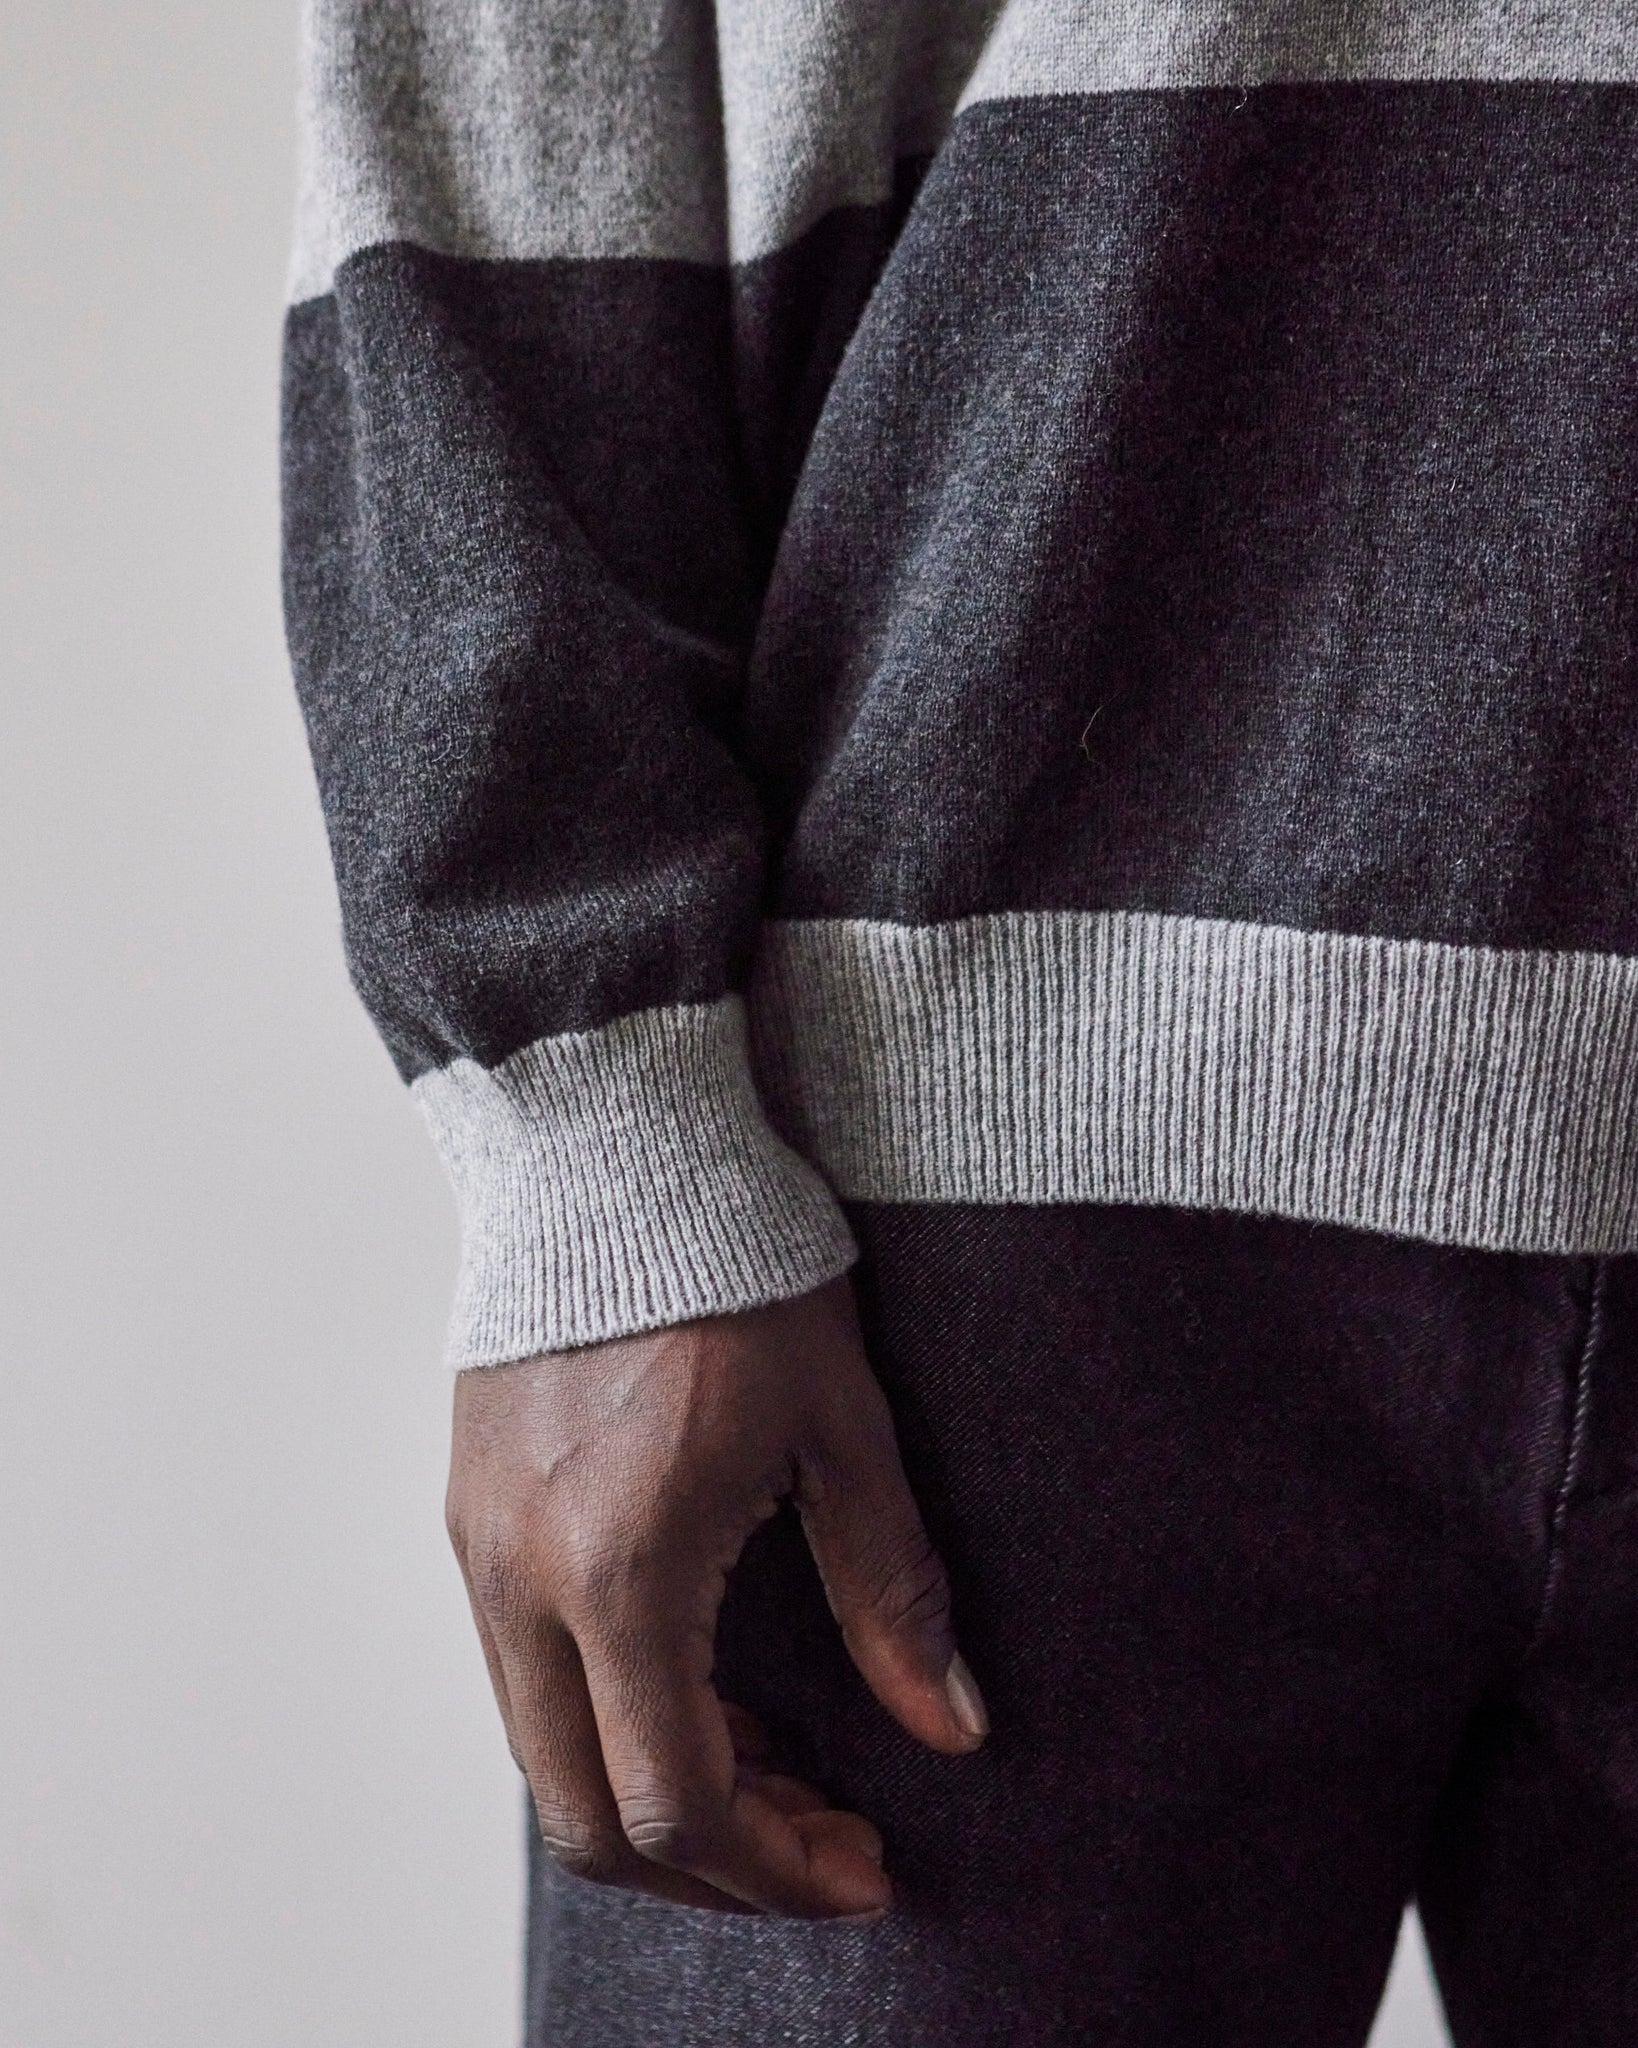 Cordera Cashmere Polo Sweater, Anthracite